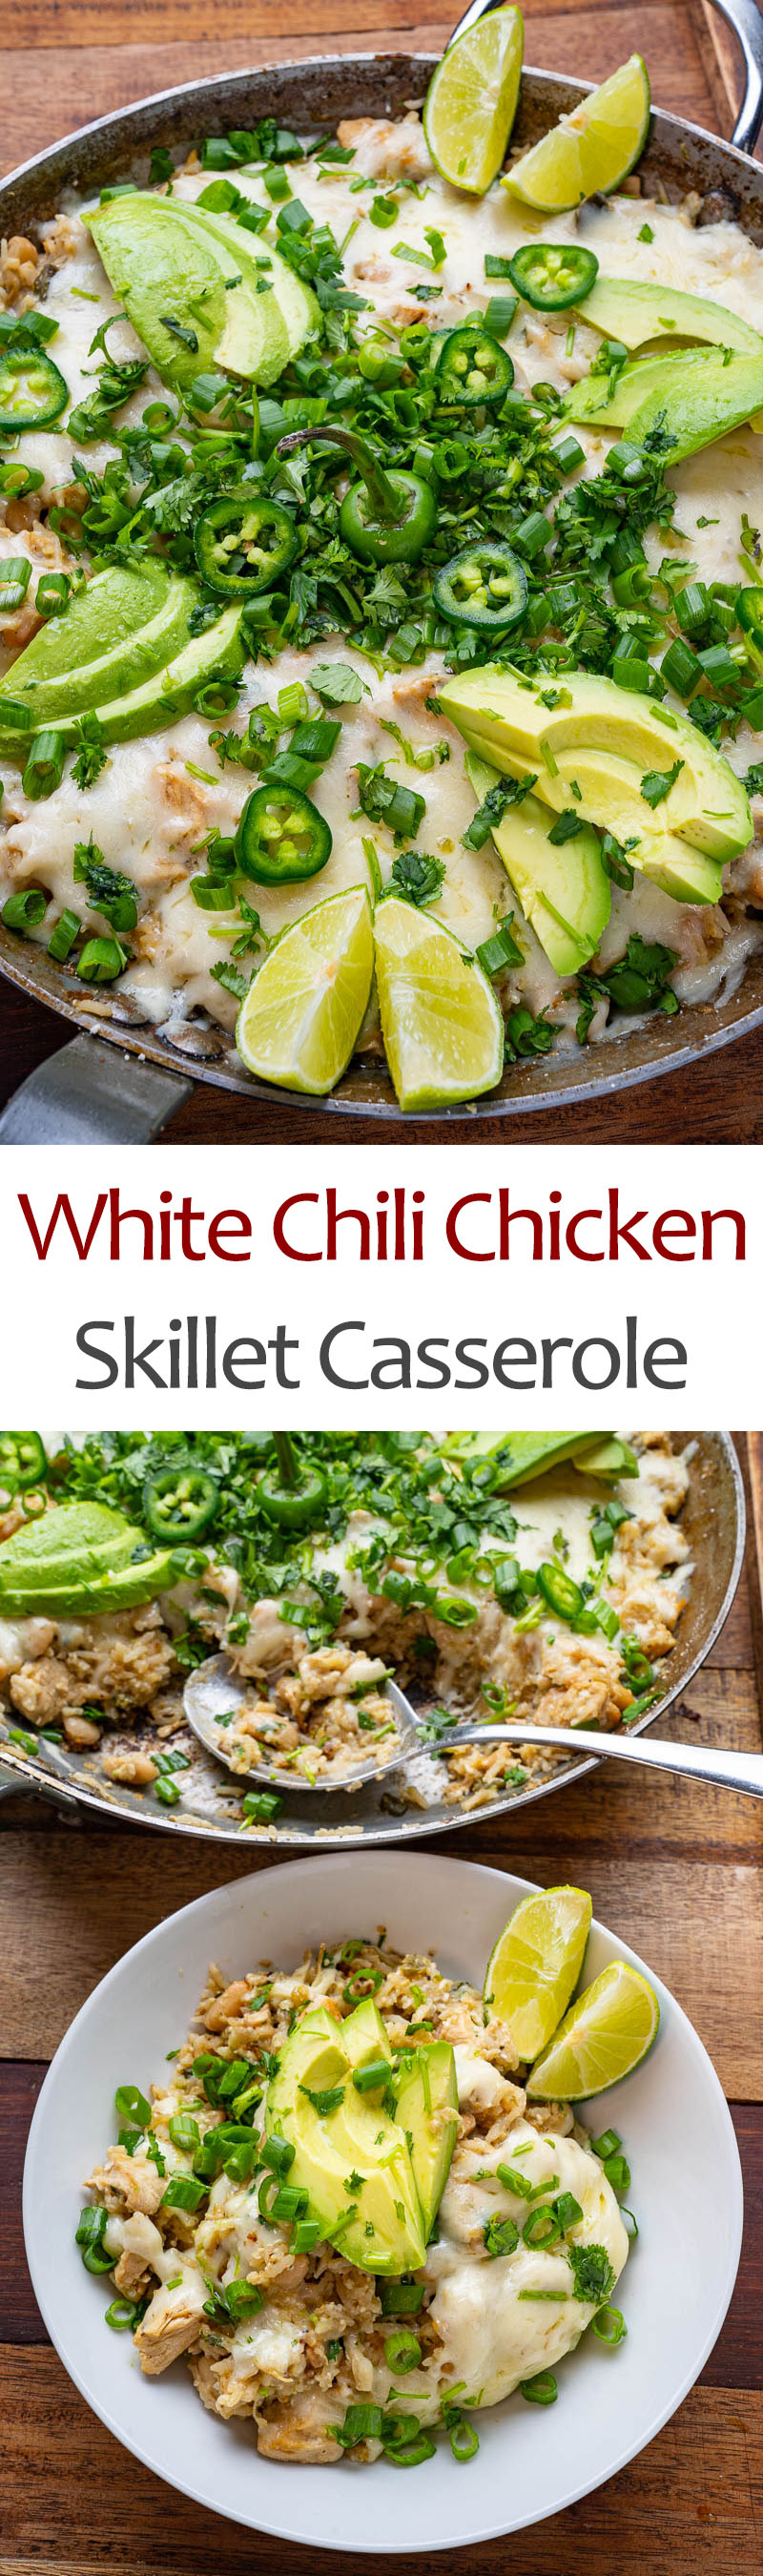 White Chili Chicken Skillet Casserole